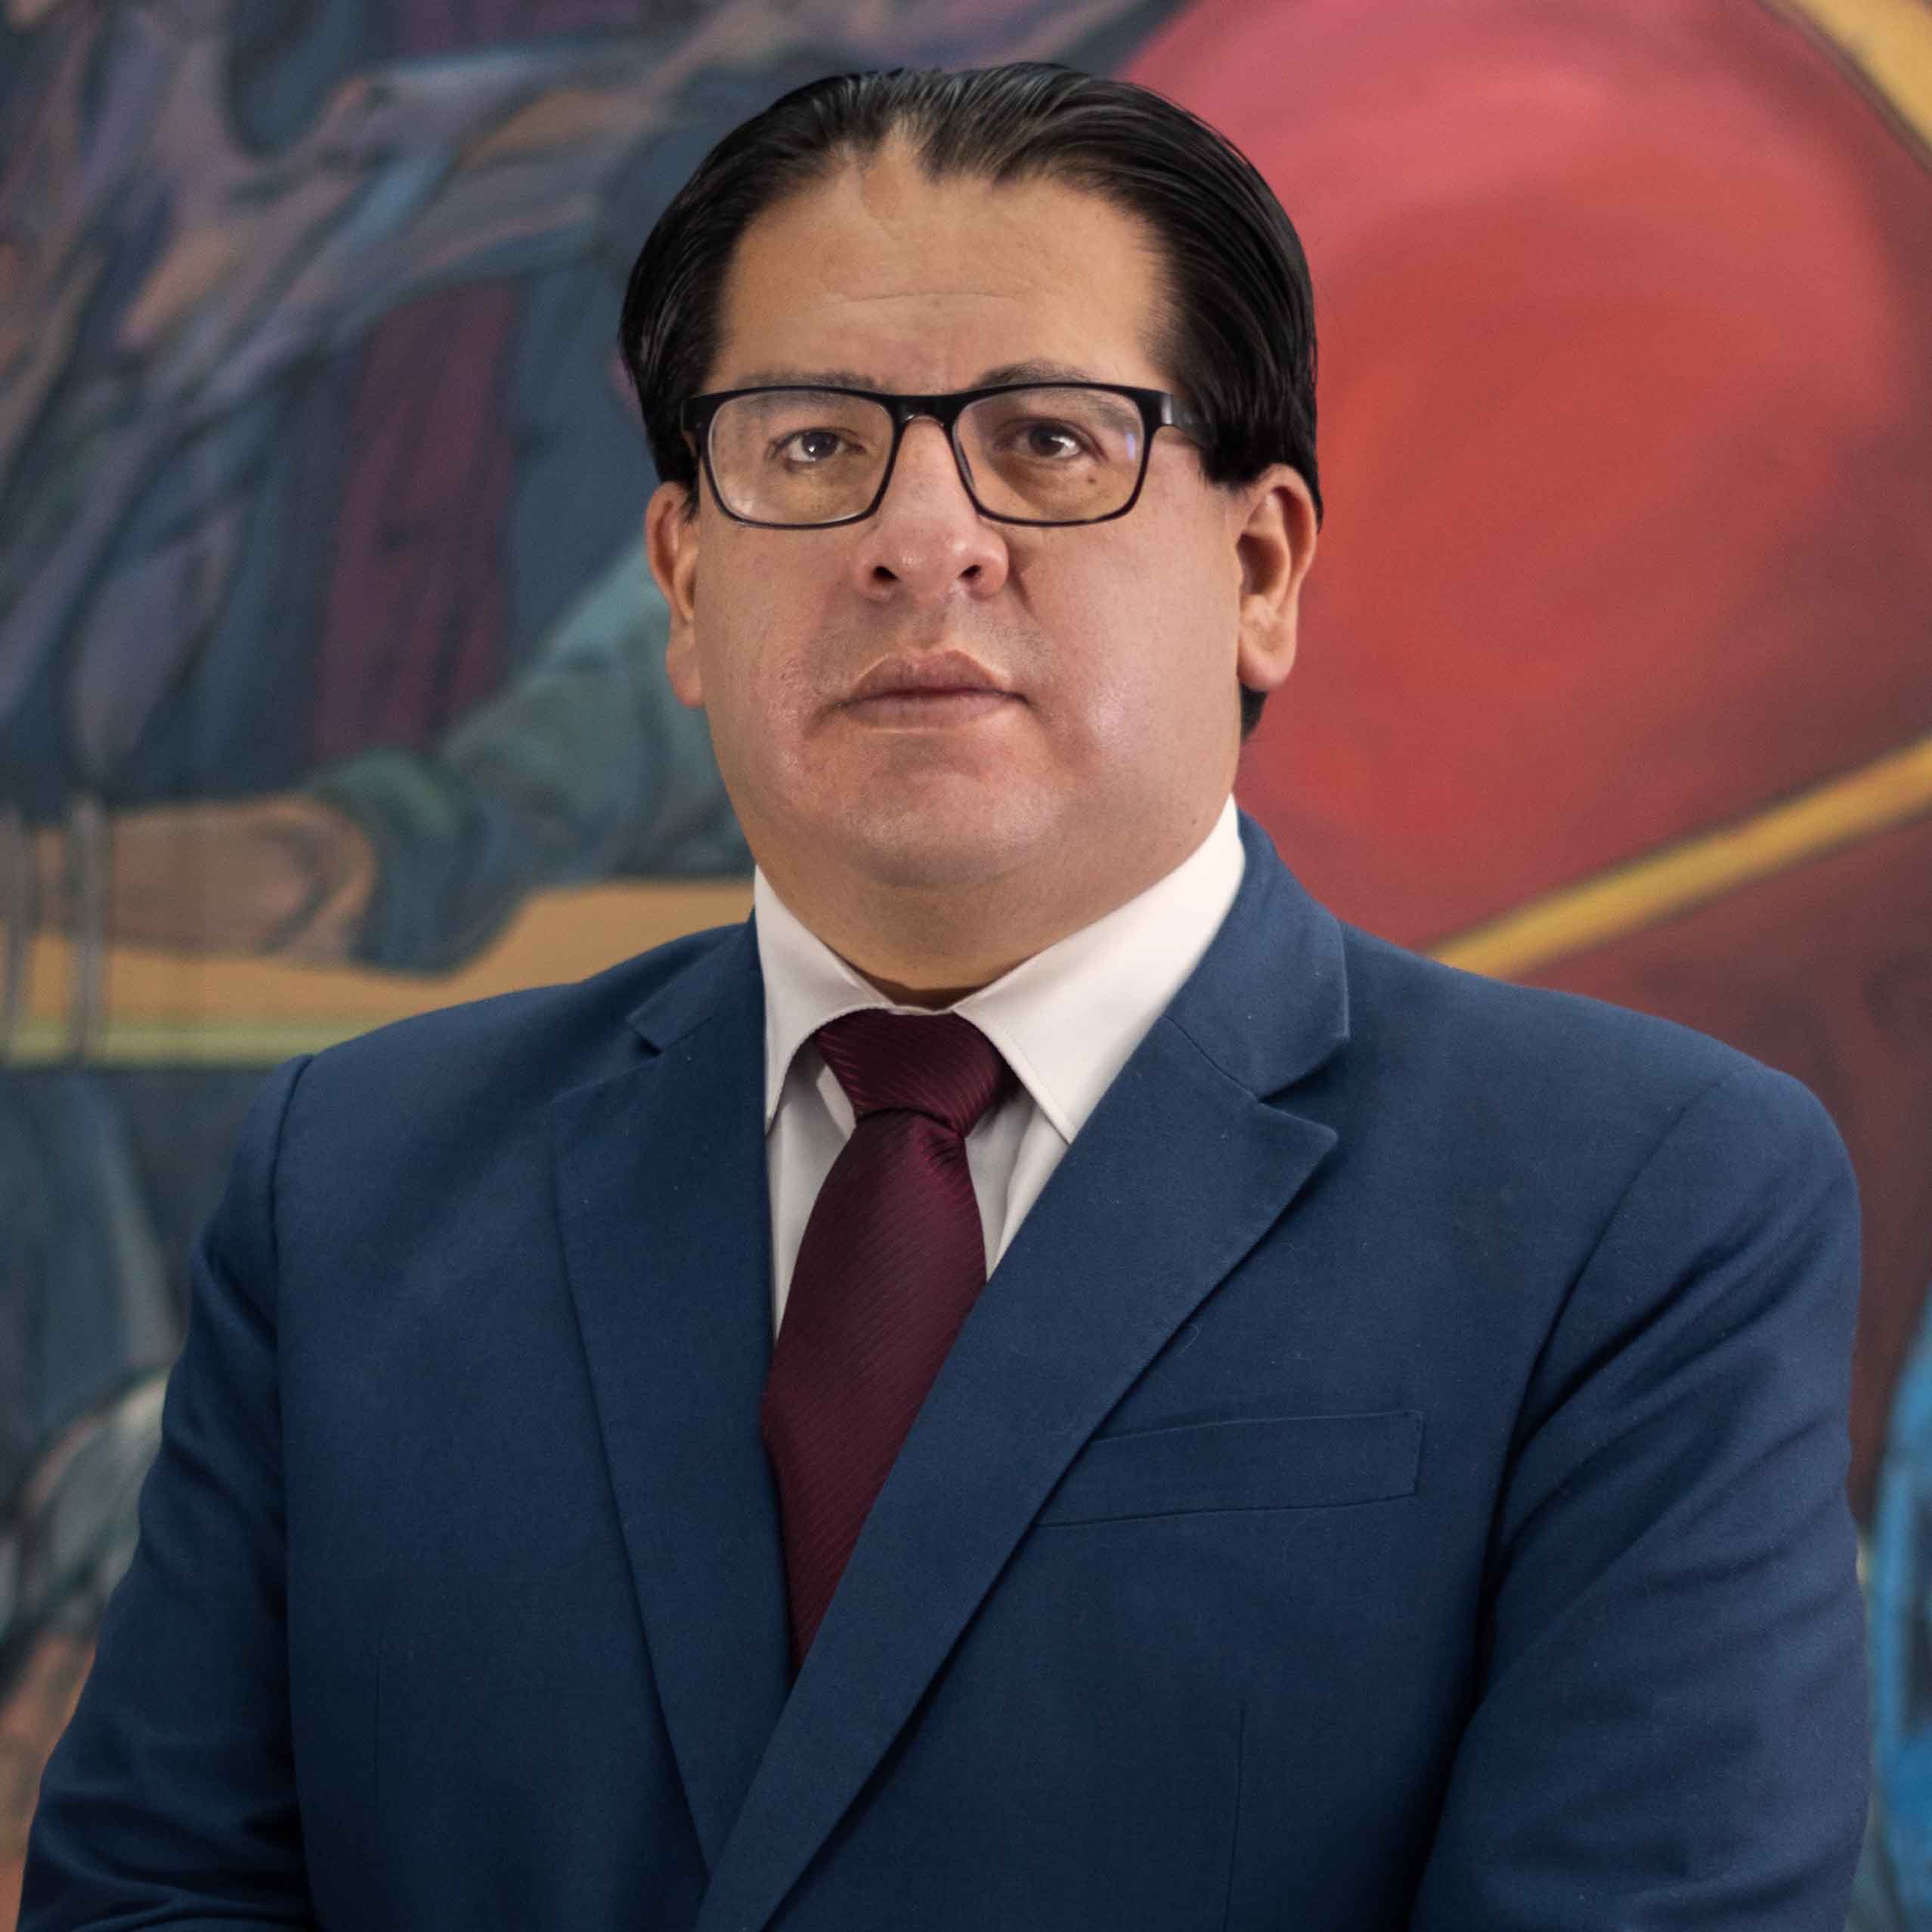 Dr. Israel Hugo Centellas Vargas